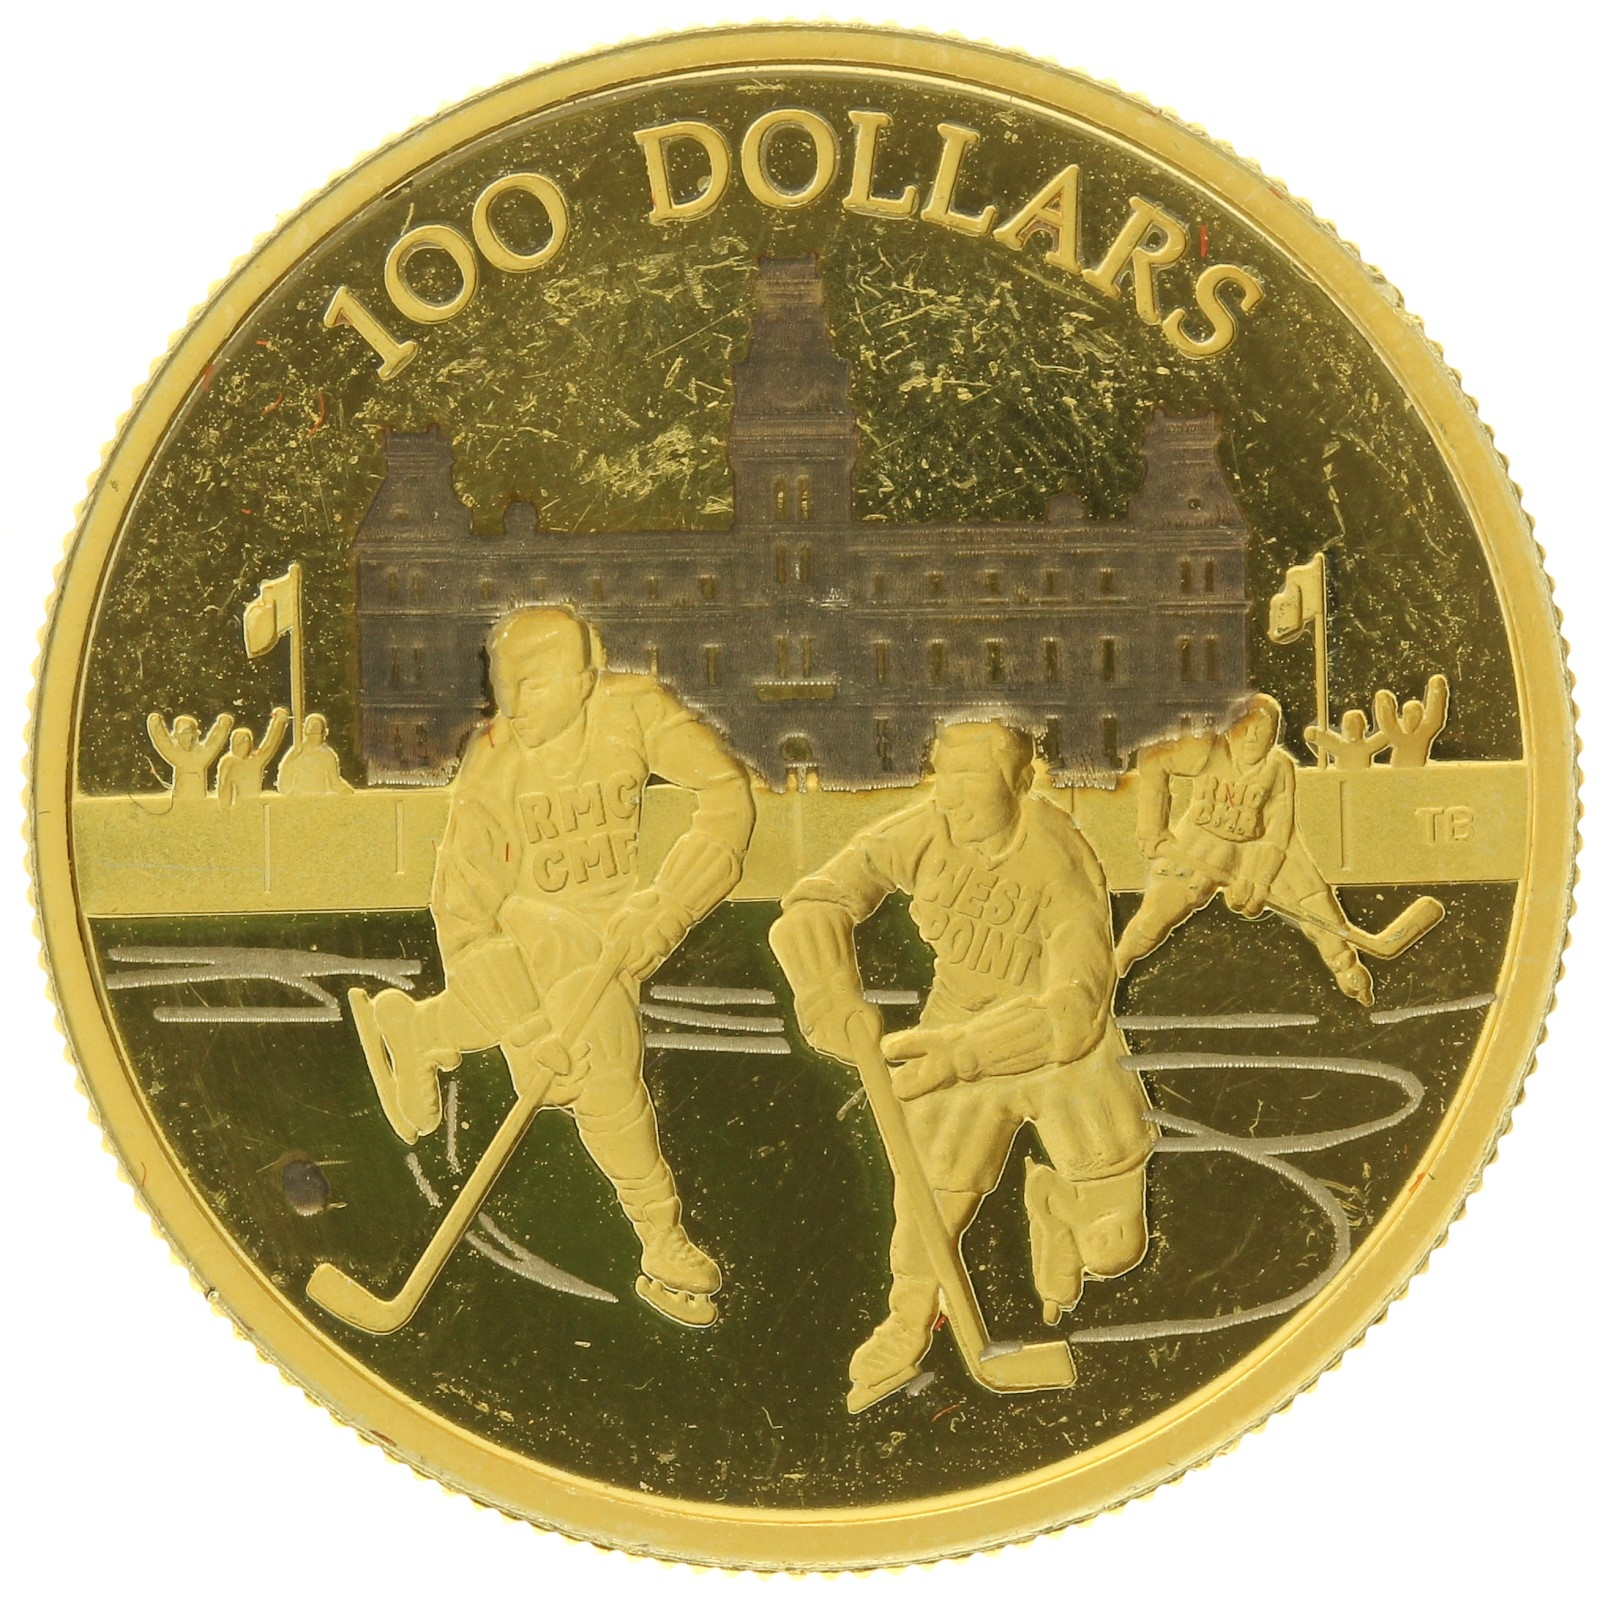 Canada - 100 Dollars - 2006 - Elizabeth II - 75th Anniversary, Hockey